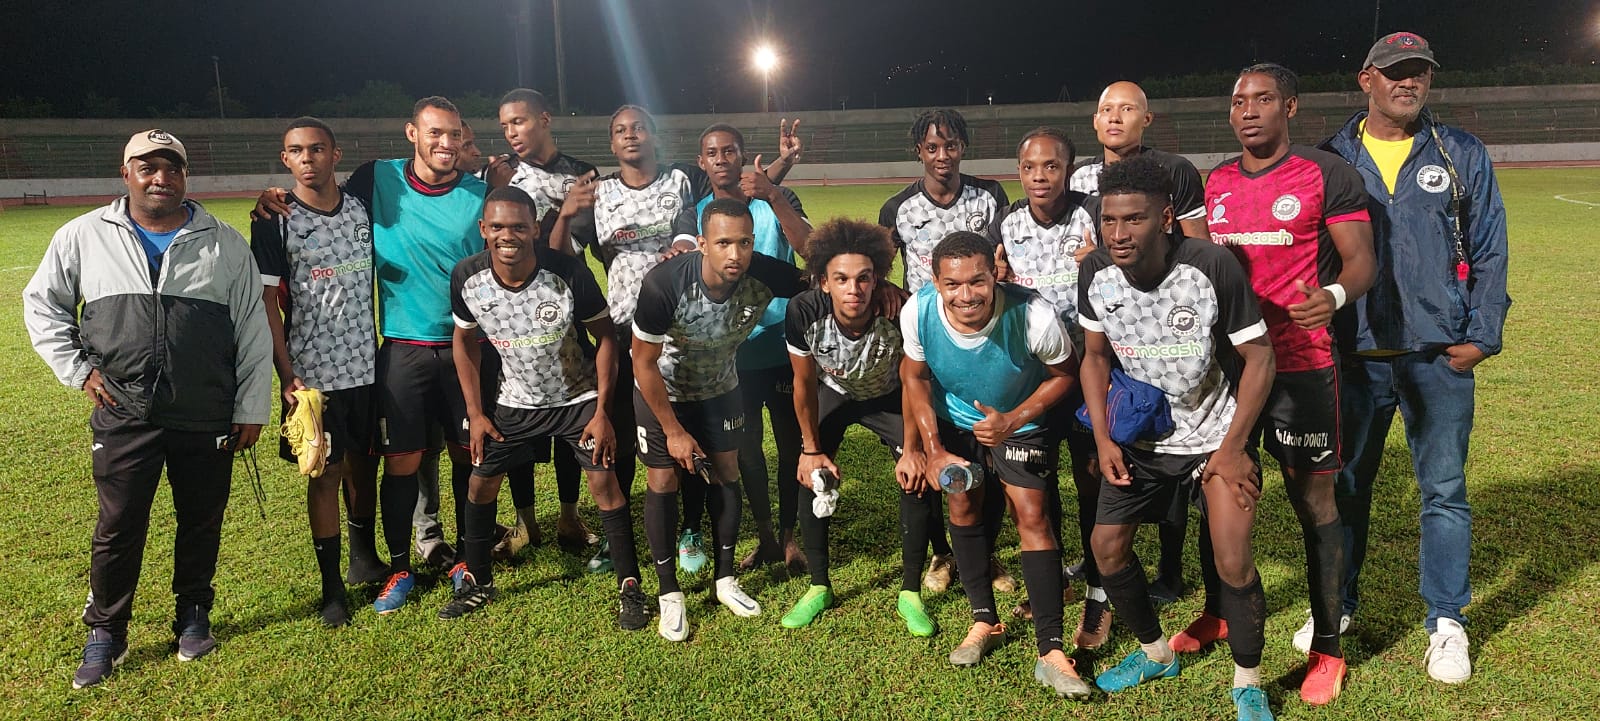     Football : le Club Colonial en finale de la Coupe de Martinique 

